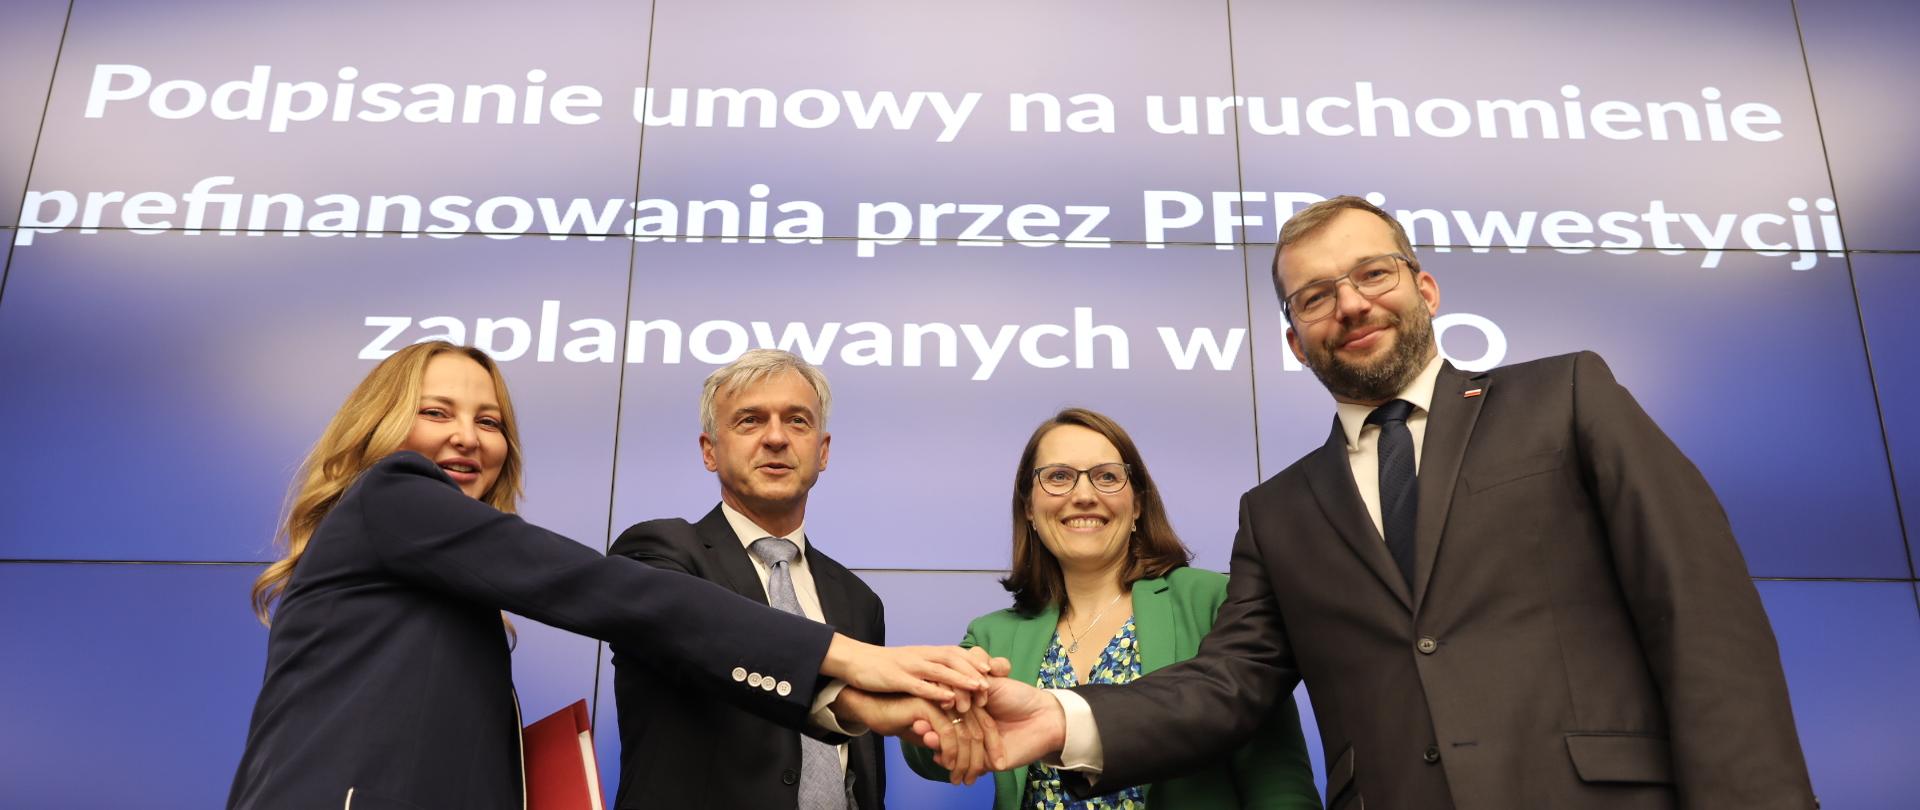 Cztery osoby, w tym minister Grzegorz Puda, stoją obok siebie przed stołem i trzymają się za ręce. W tle biały napis na niebieskim tle.